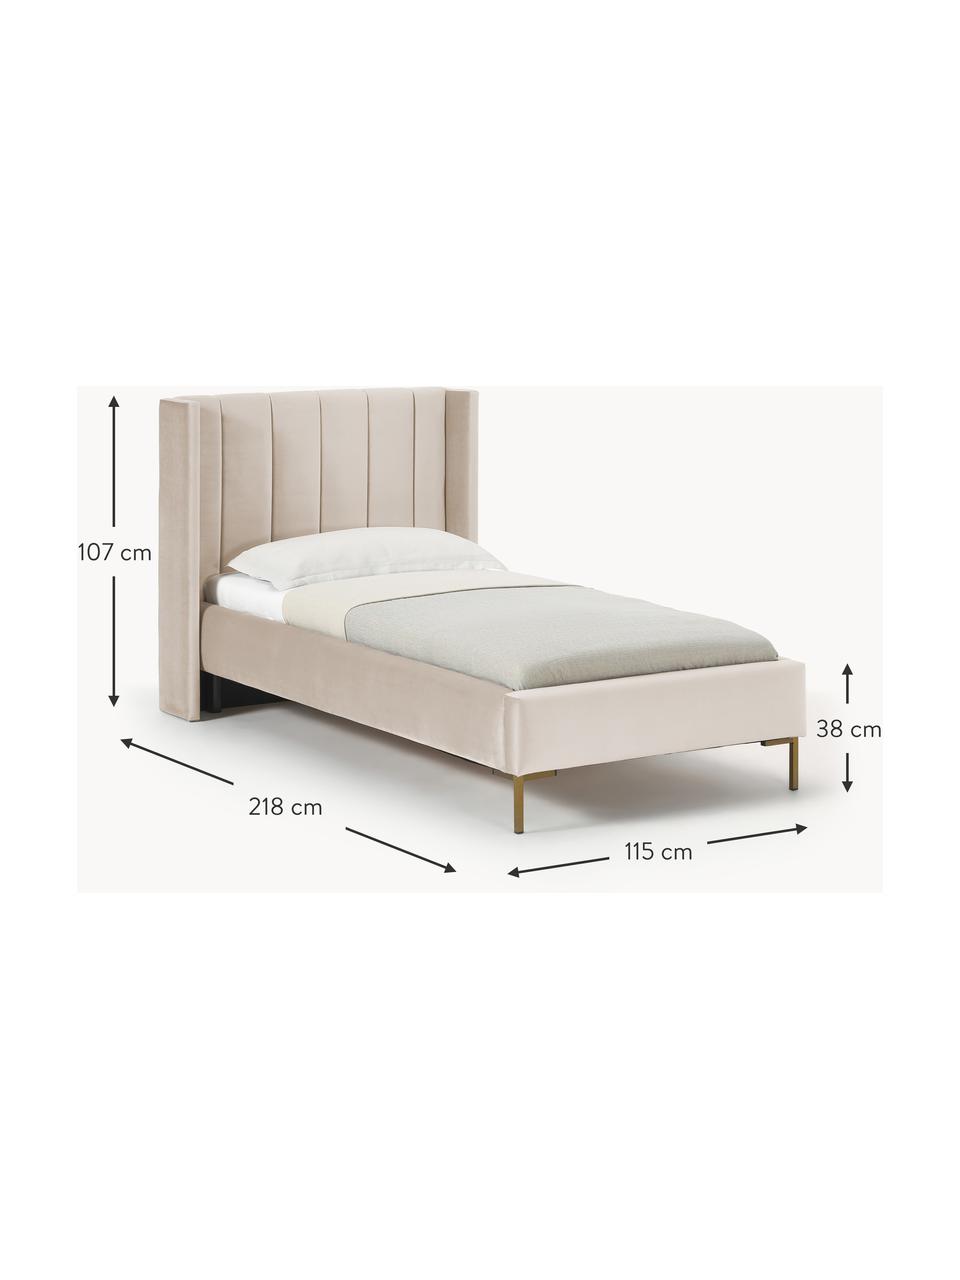 Estructuras de cama de diseño ❘ Westwing